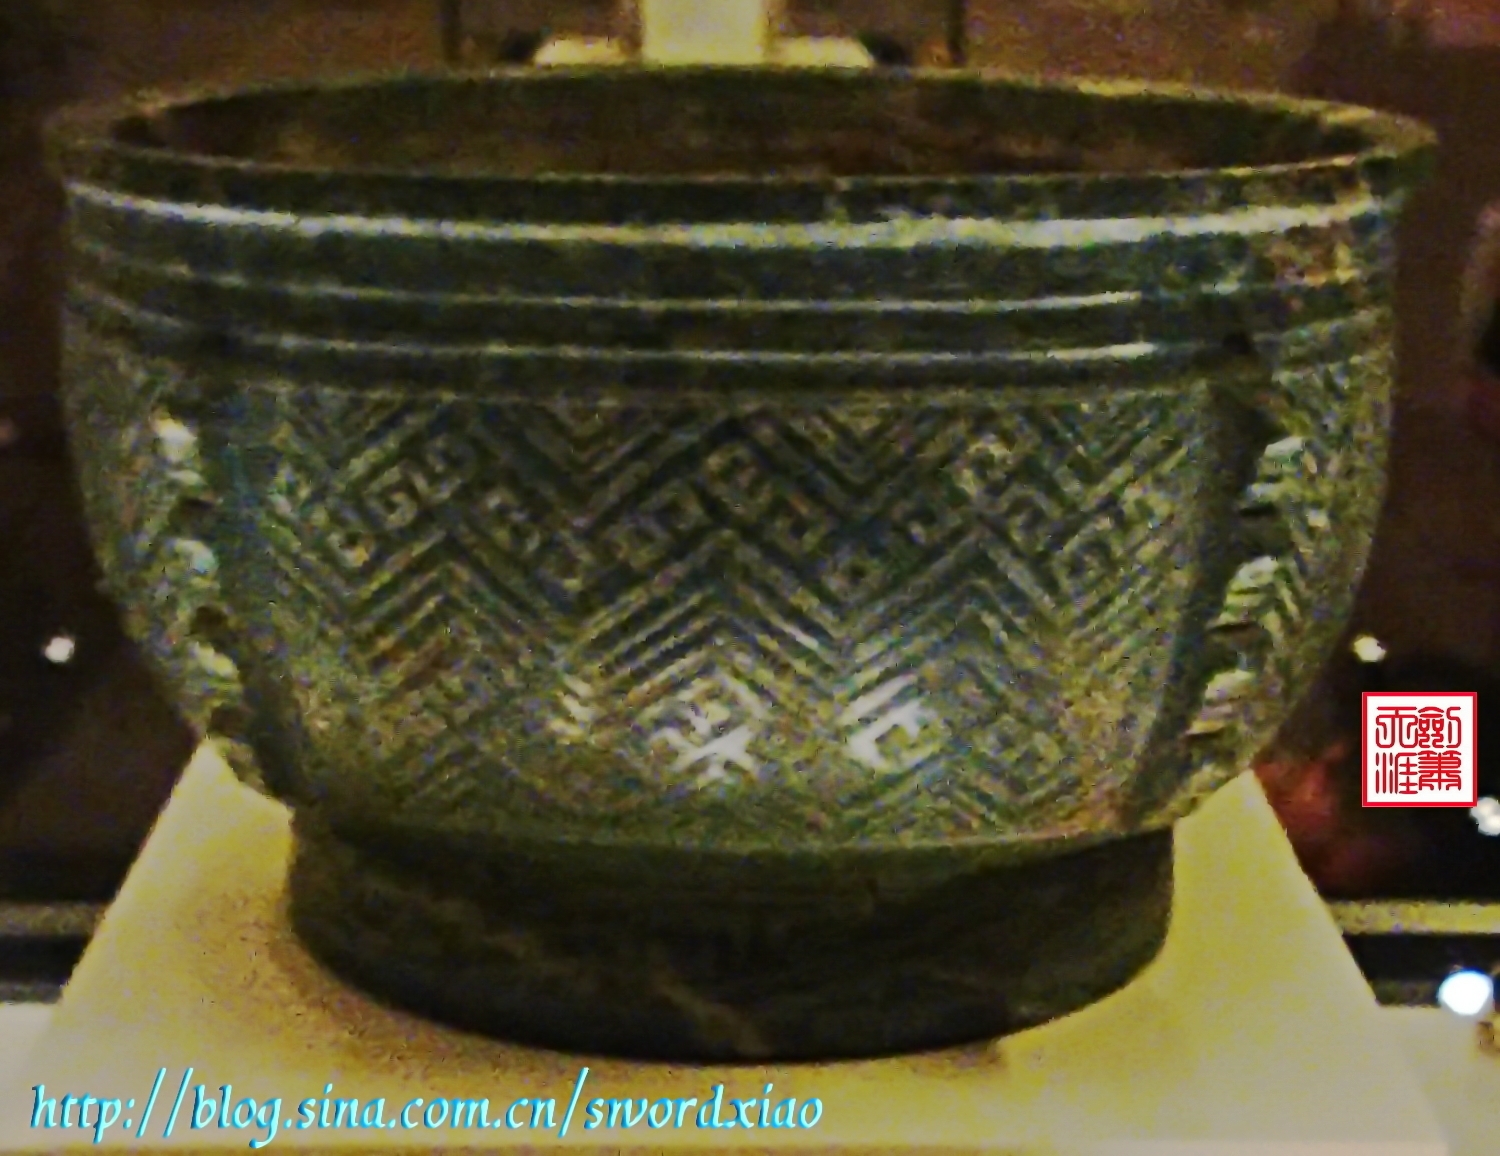 中国国家博物馆之古代器皿篇——京城漫游二青玉簋| 剑箫天涯